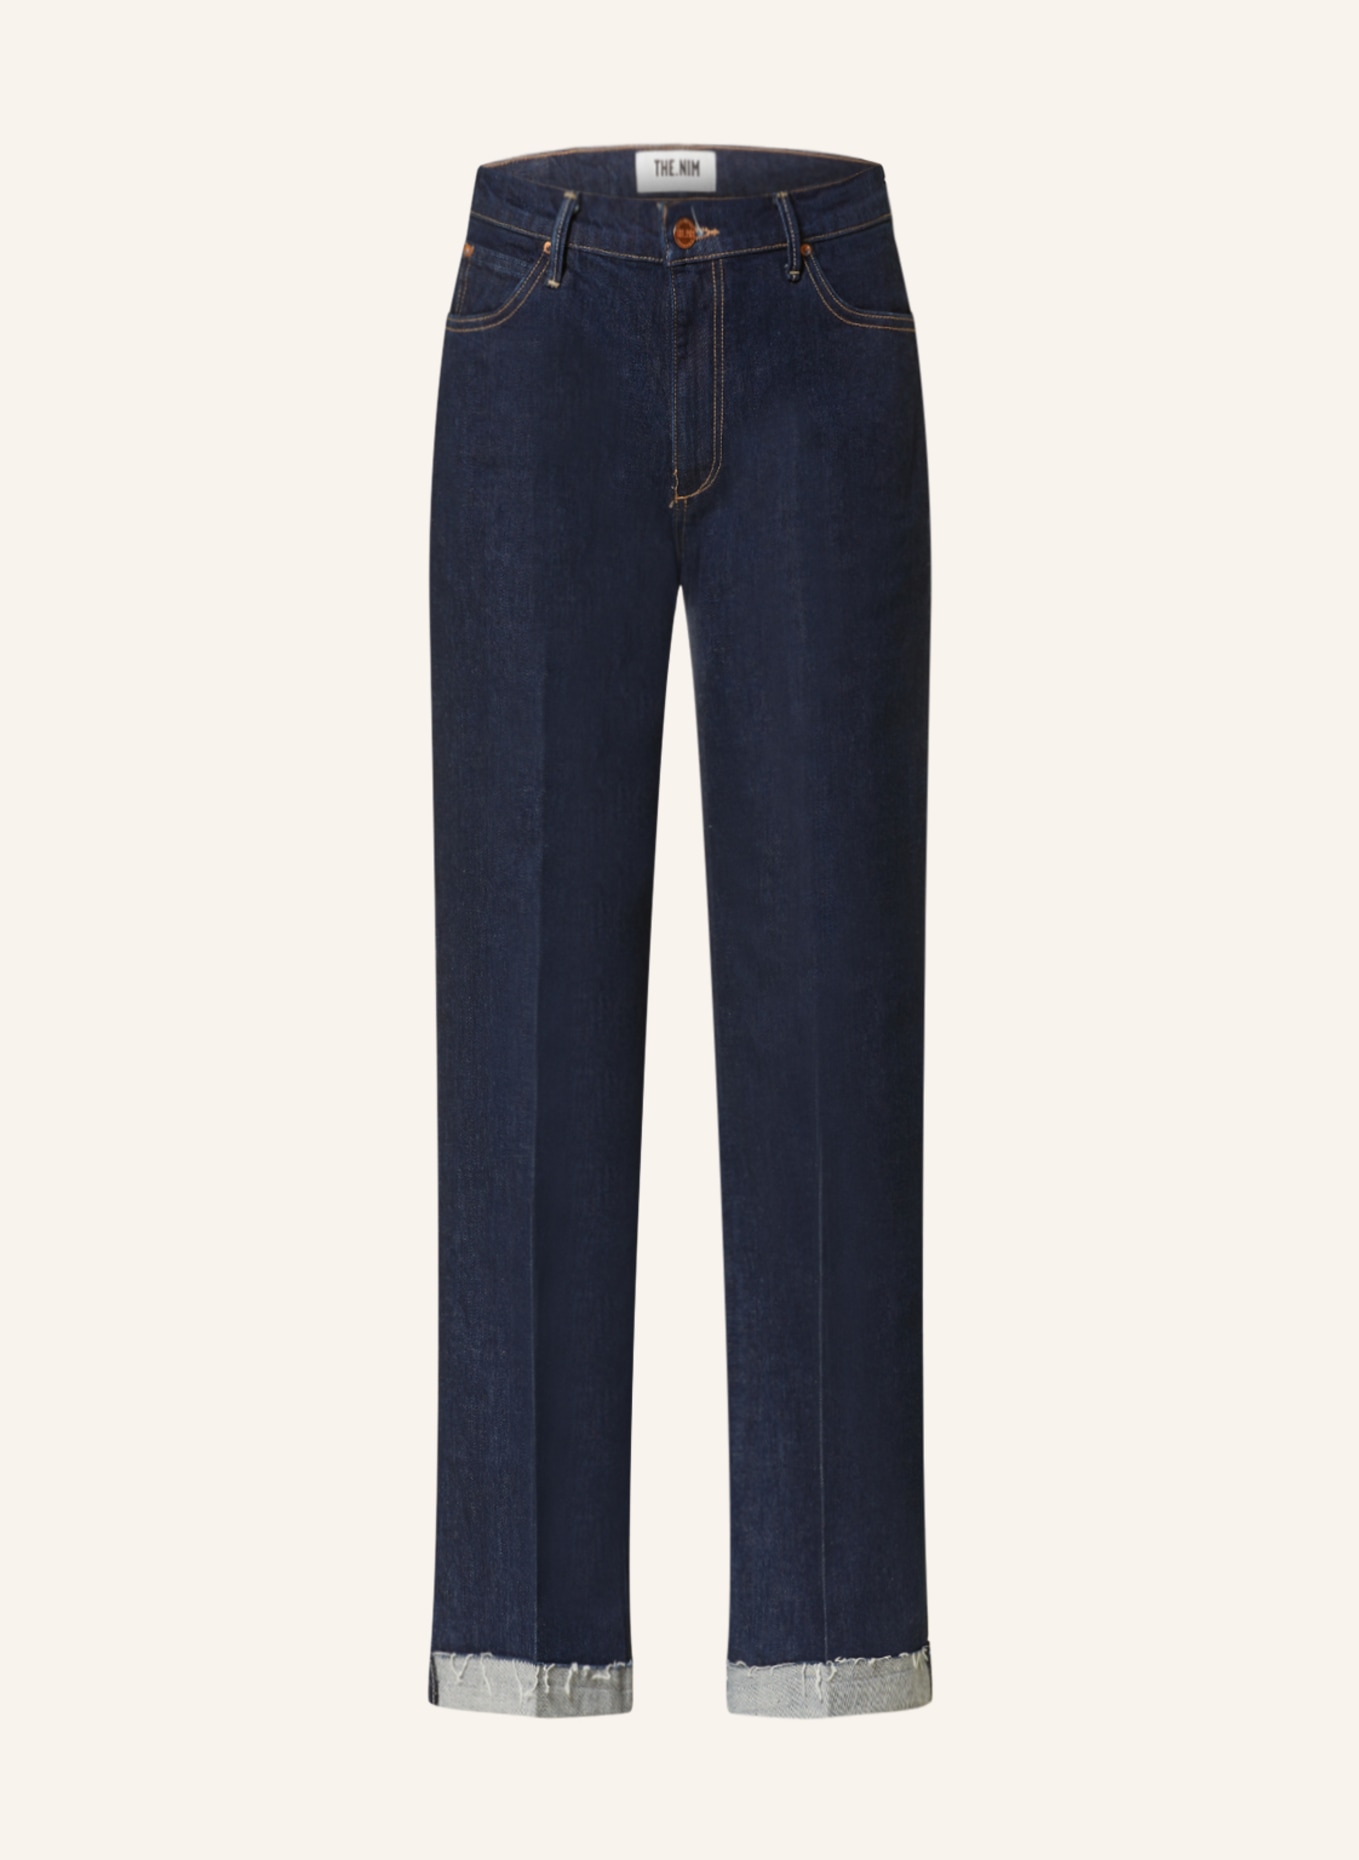 THE.NIM STANDARD Flared Jeans CHERYL, Farbe: W801-PRB RINSE DARK BLUE (Bild 1)